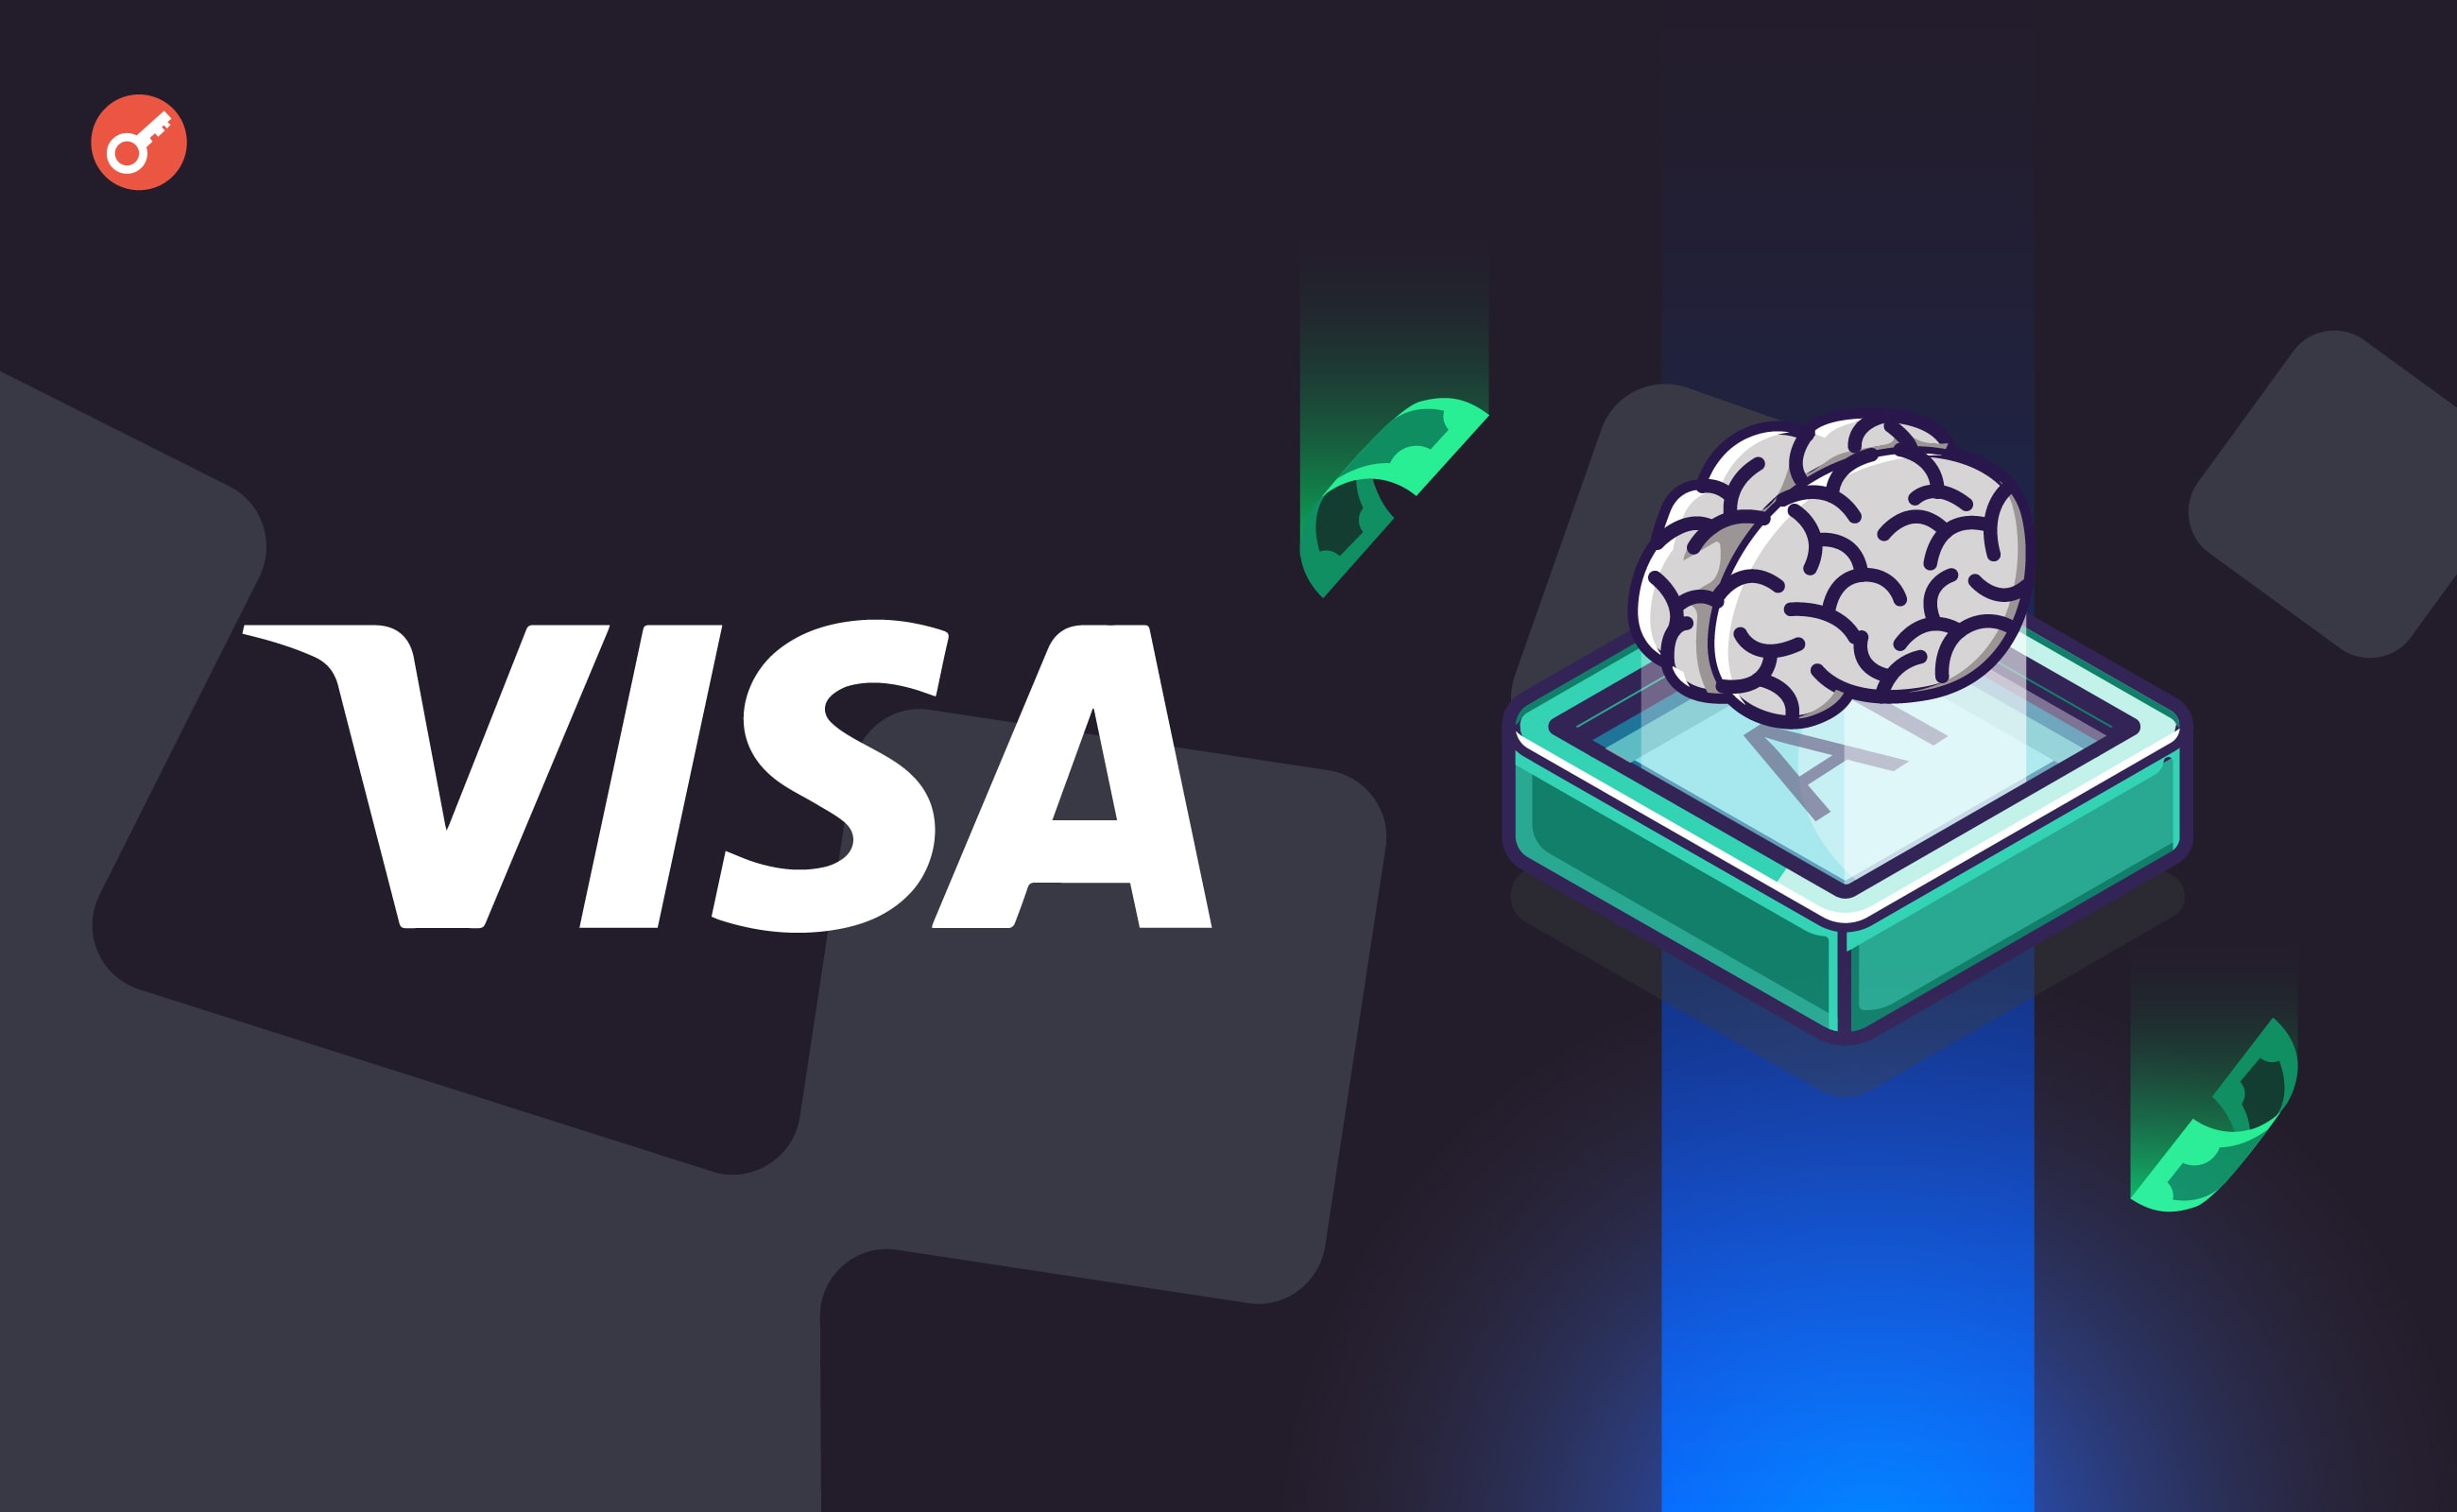 Visa виділила $100 млн на інвестиції в штучний інтелект. Головний колаж новини.